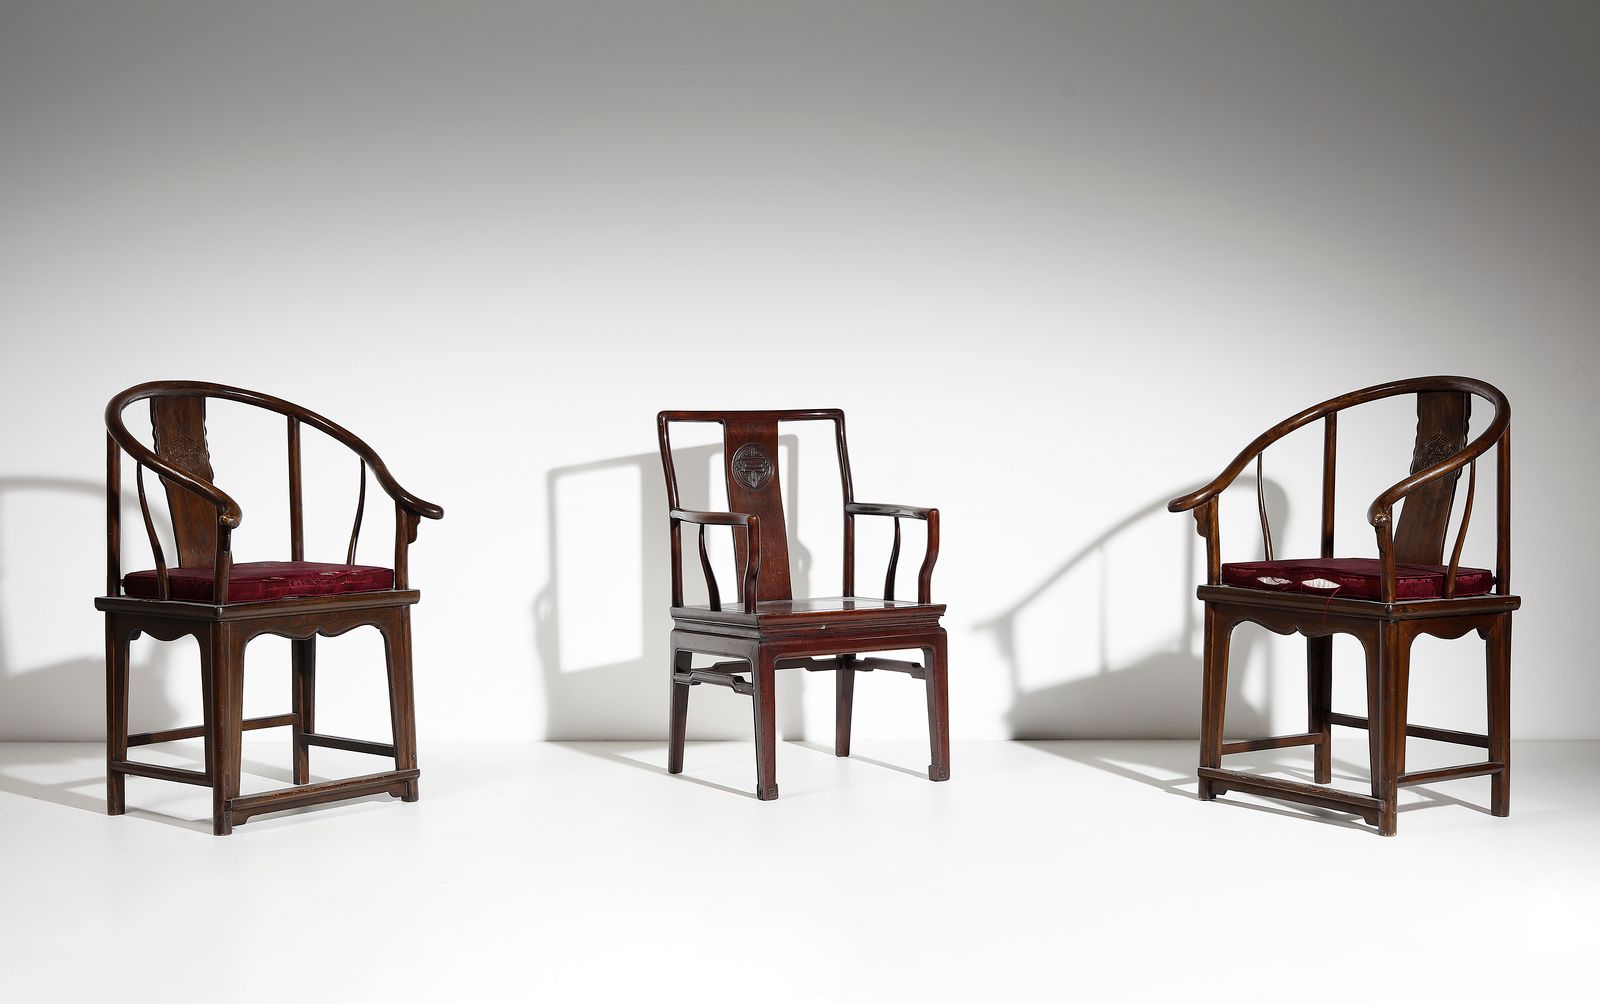 Chinese Art A group of three wooden armchairs Chinesische Kunst. Eine Gruppe von&hellip;